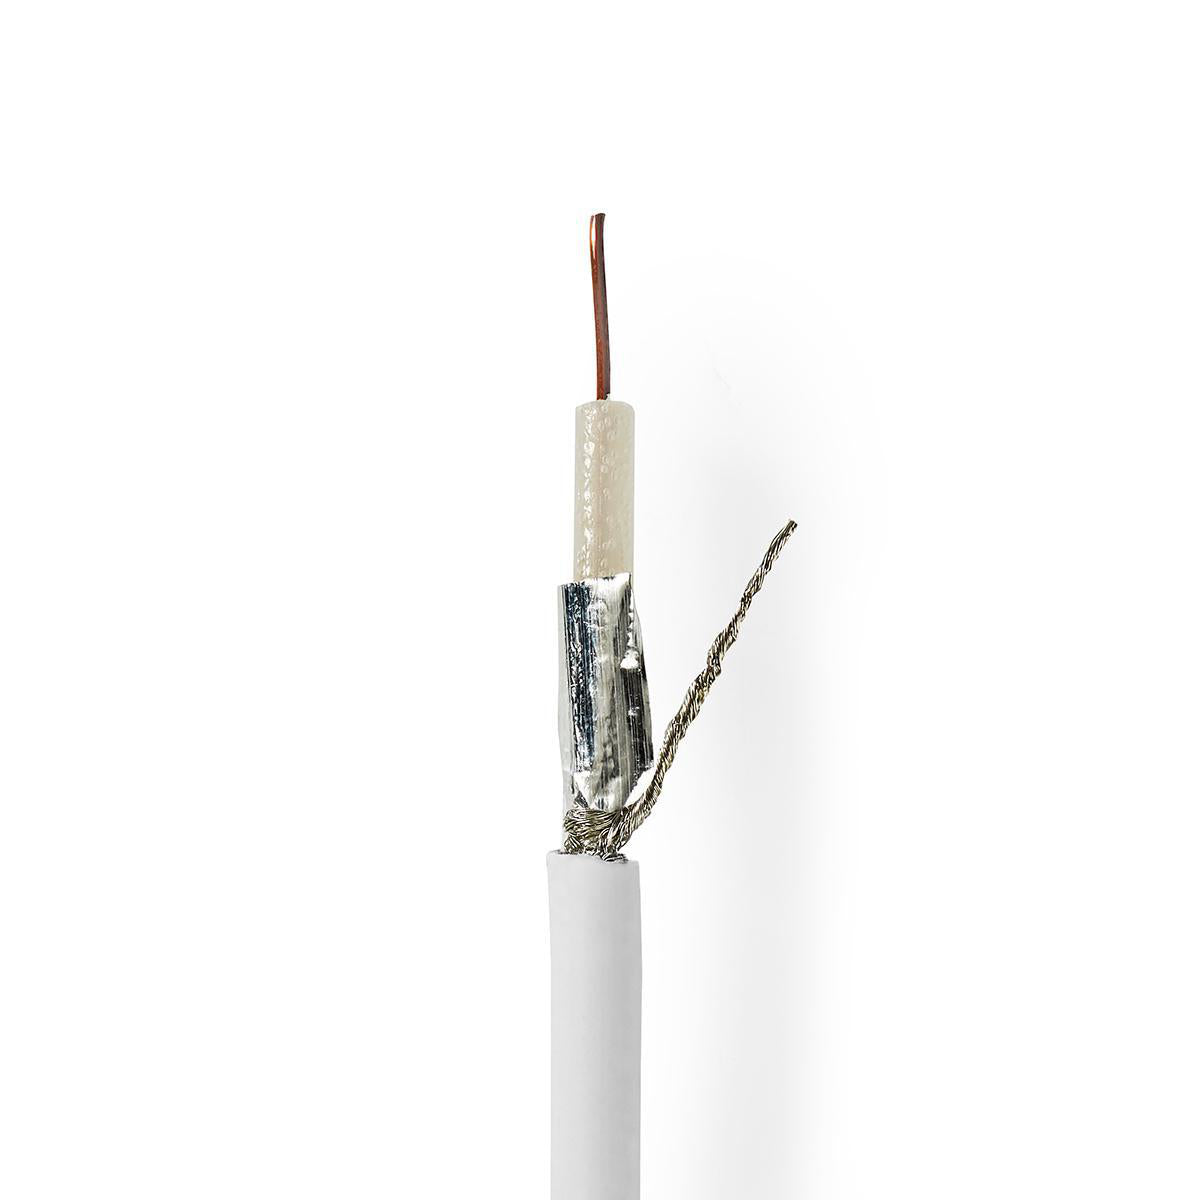 Antennenkabel auf Rolle | RG59 | 75 Ohm | Doppelt geschirmt | ECA | 100.0 m | Koax | PVC | Weiss | Rolle